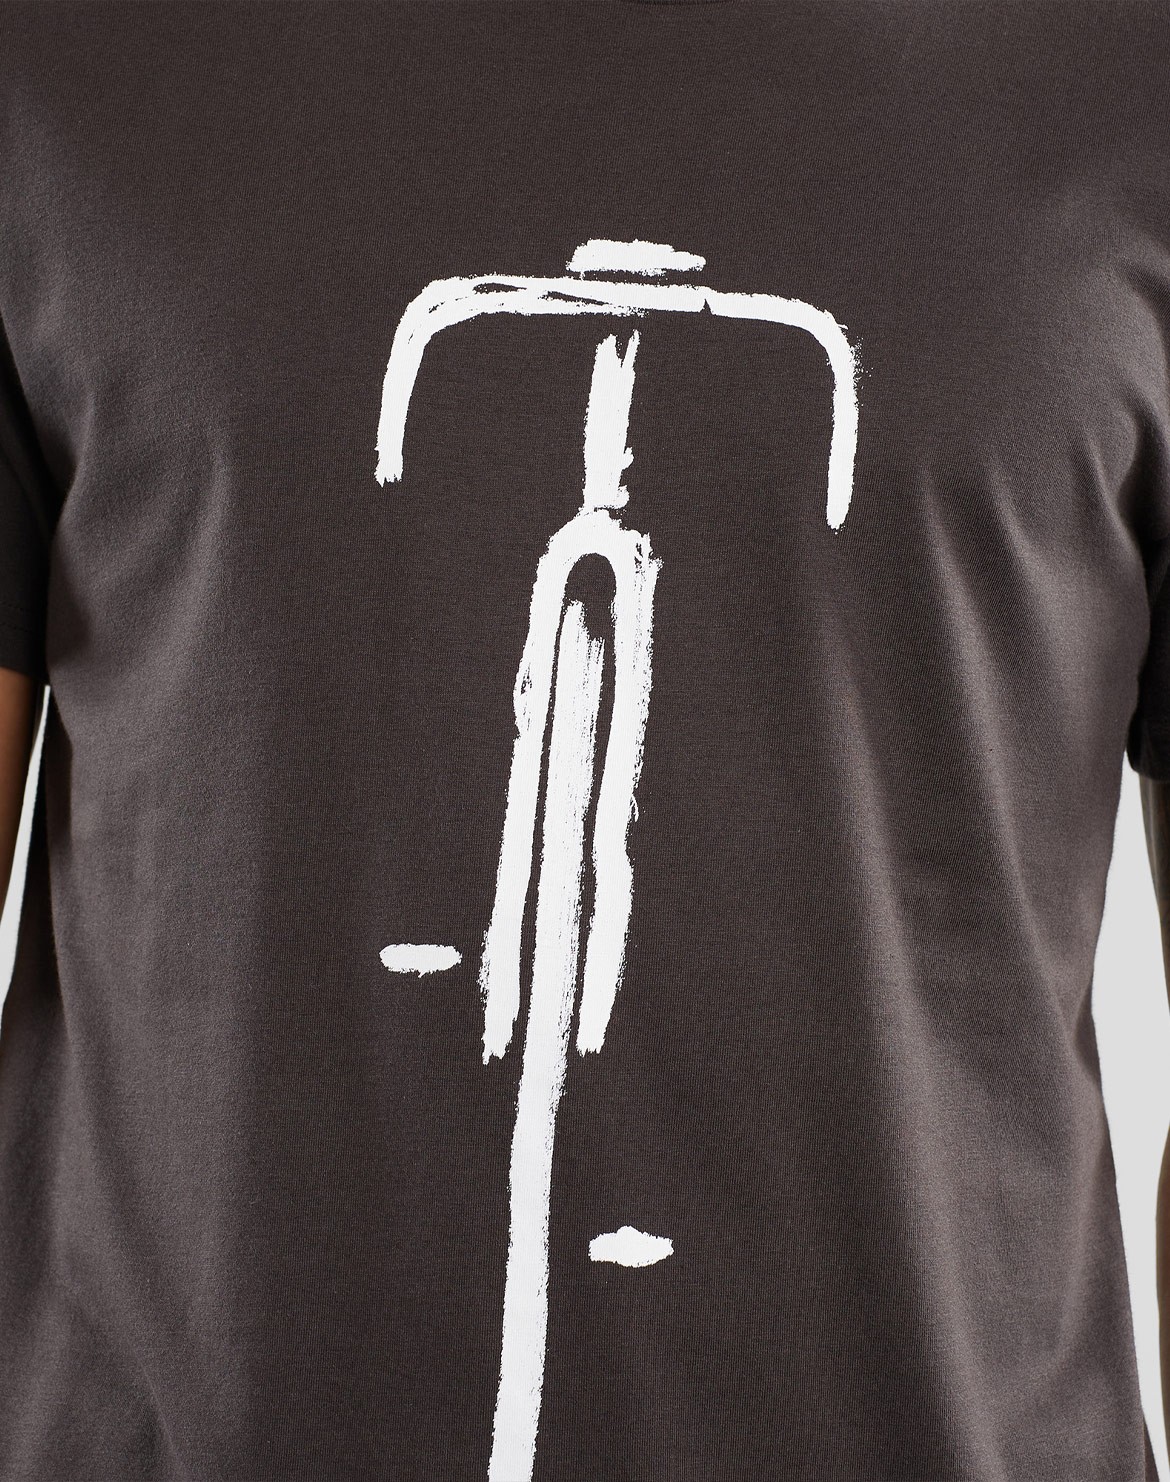 Stockholm Bike Front T-Shirt